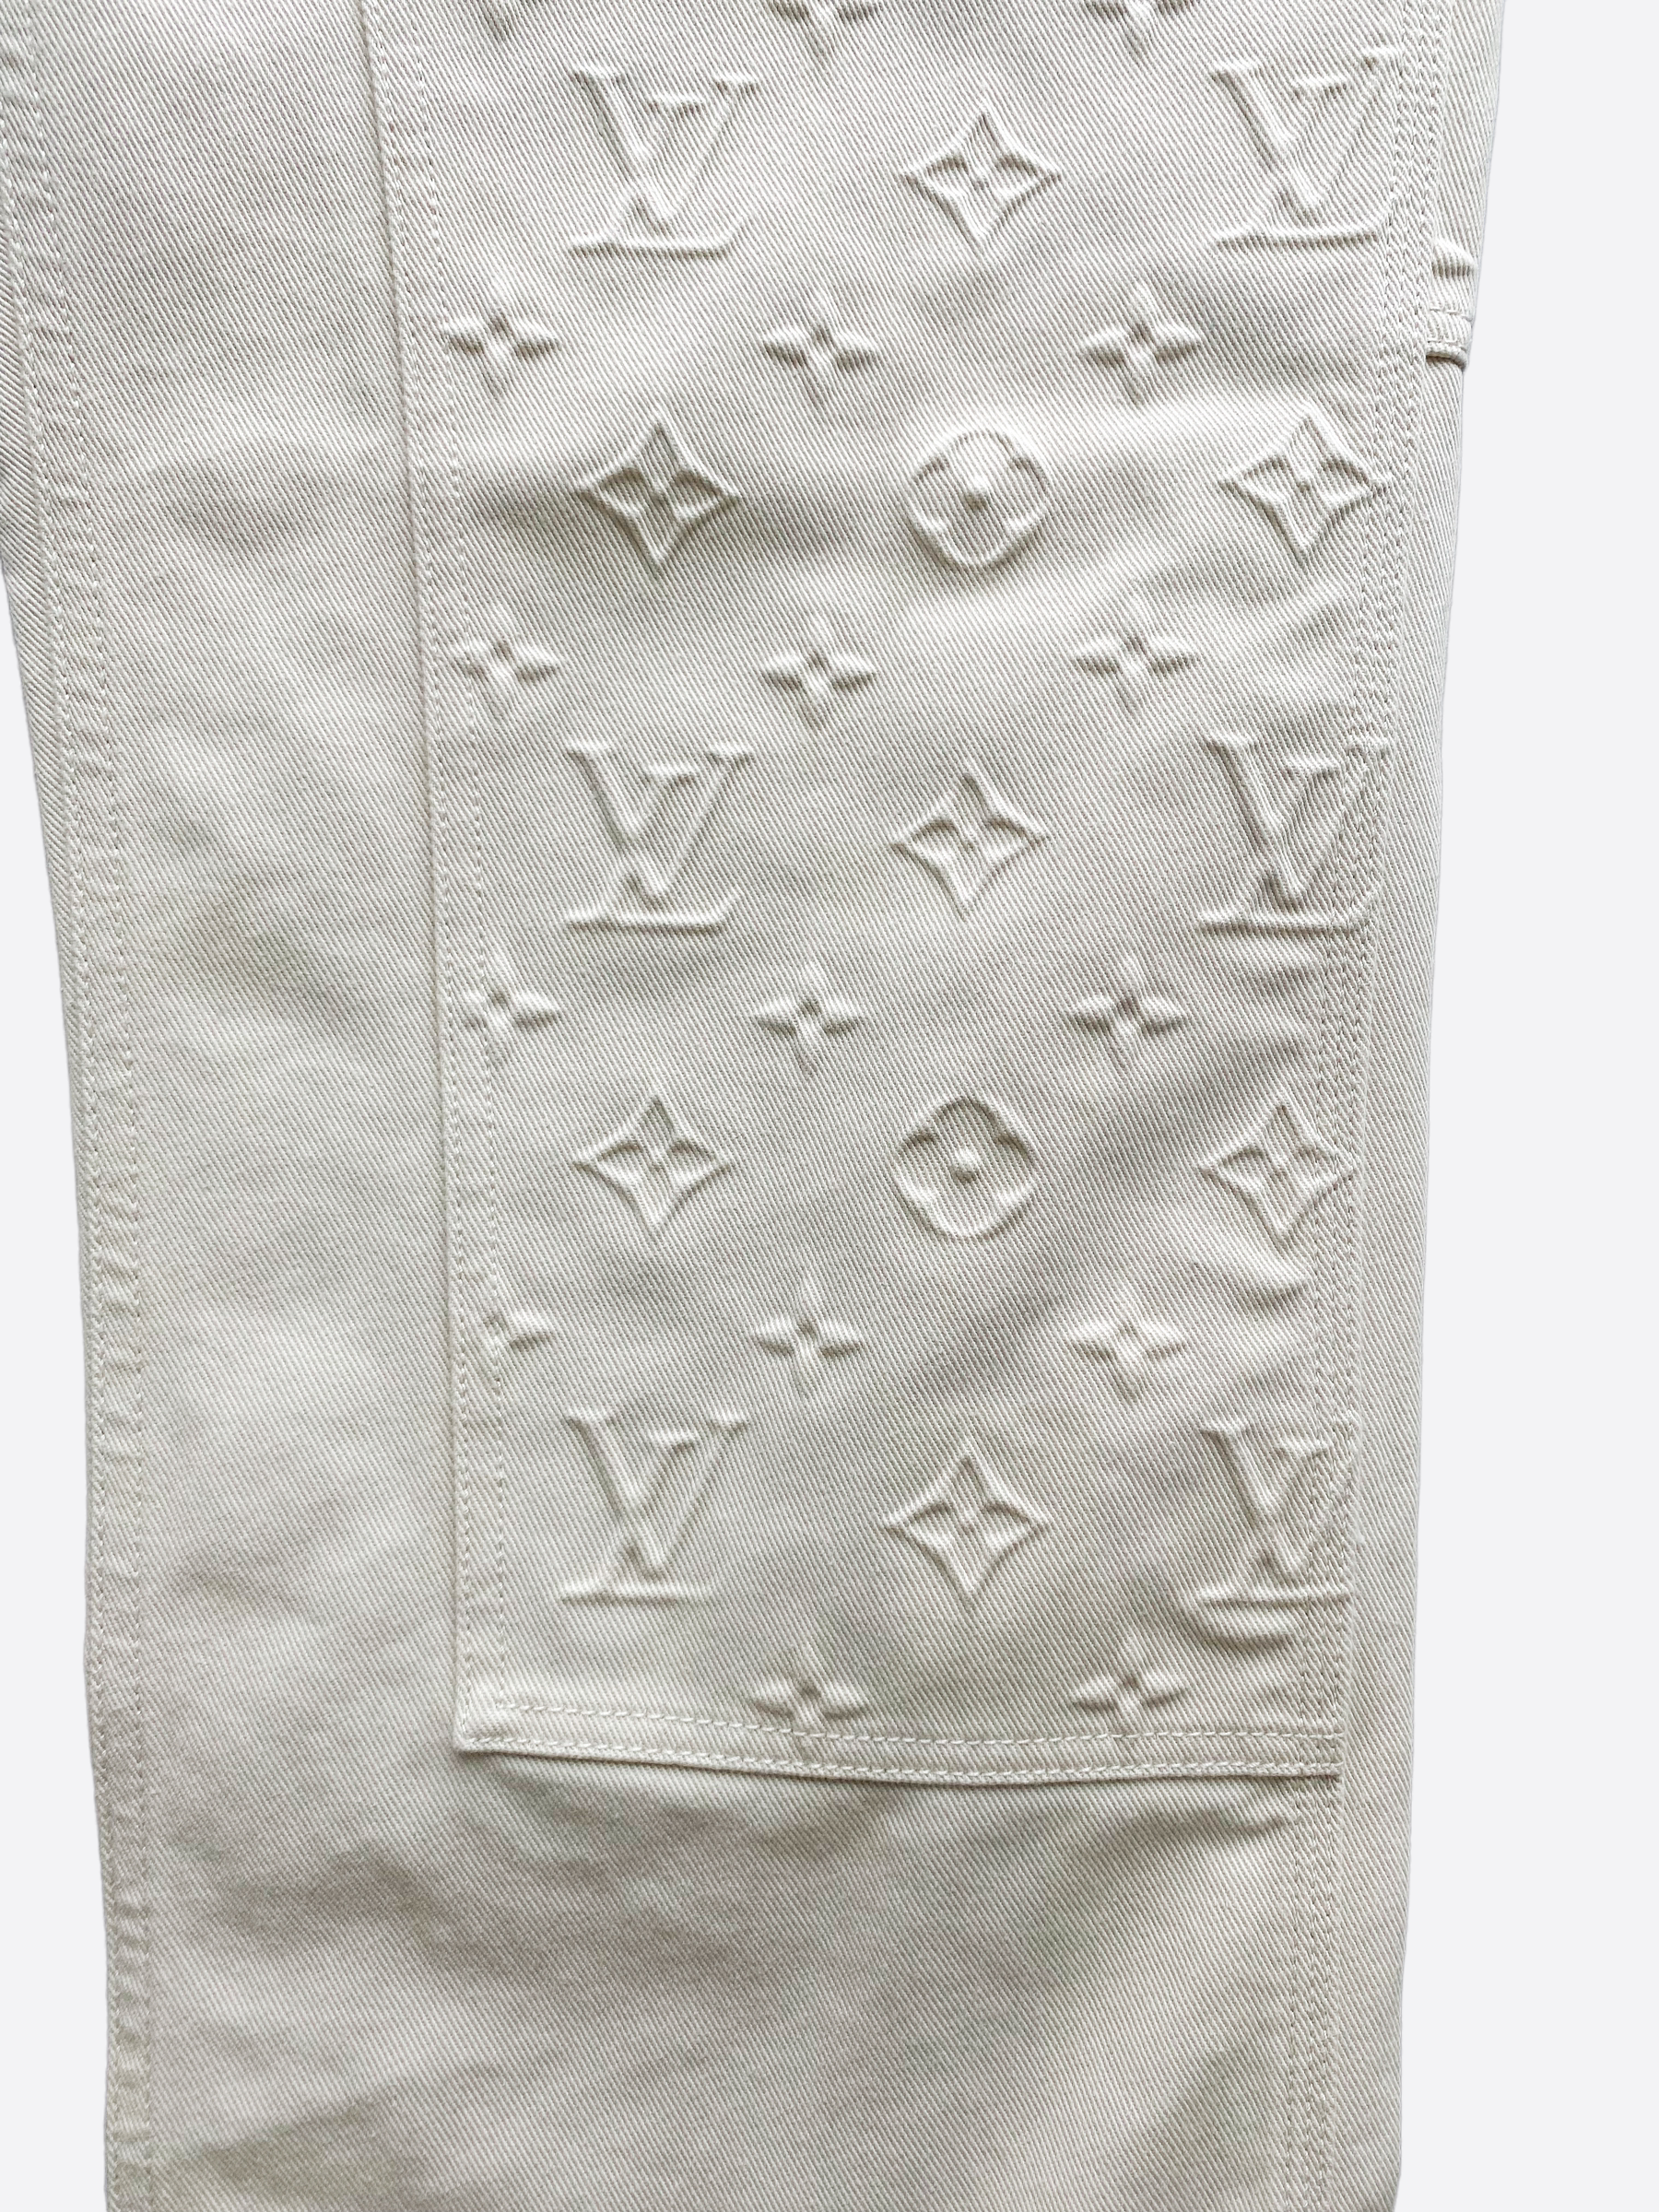 Authentic Louis Vuitton Carpenter Jeans Monogram Patch Detail Size 44  Womens 12